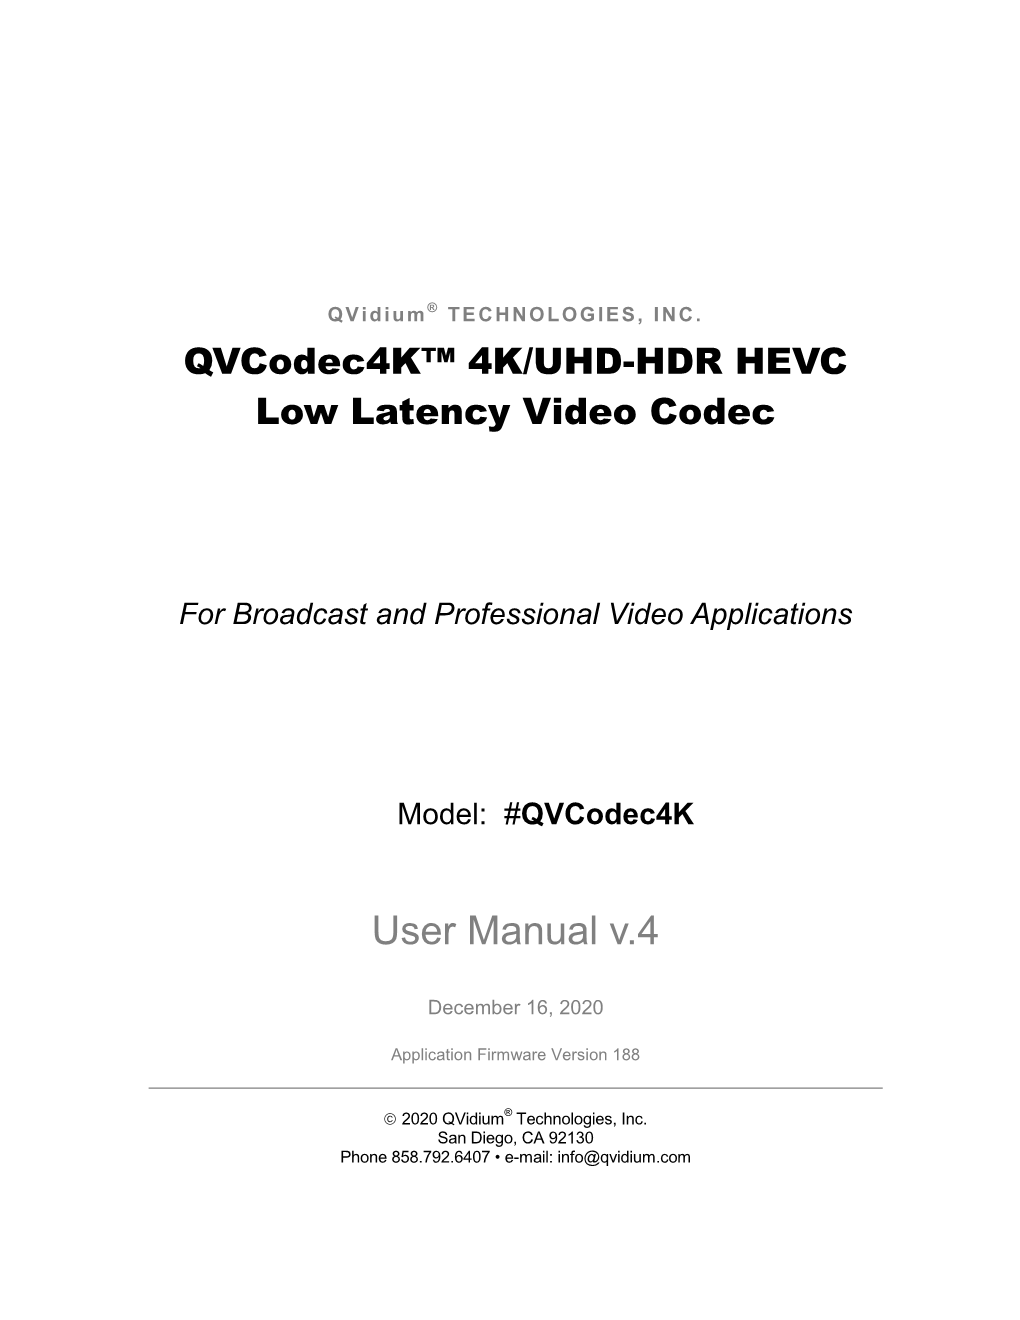 Qvcodec4k™ 4K/UHD-HDR HEVC Low Latency Video Codec